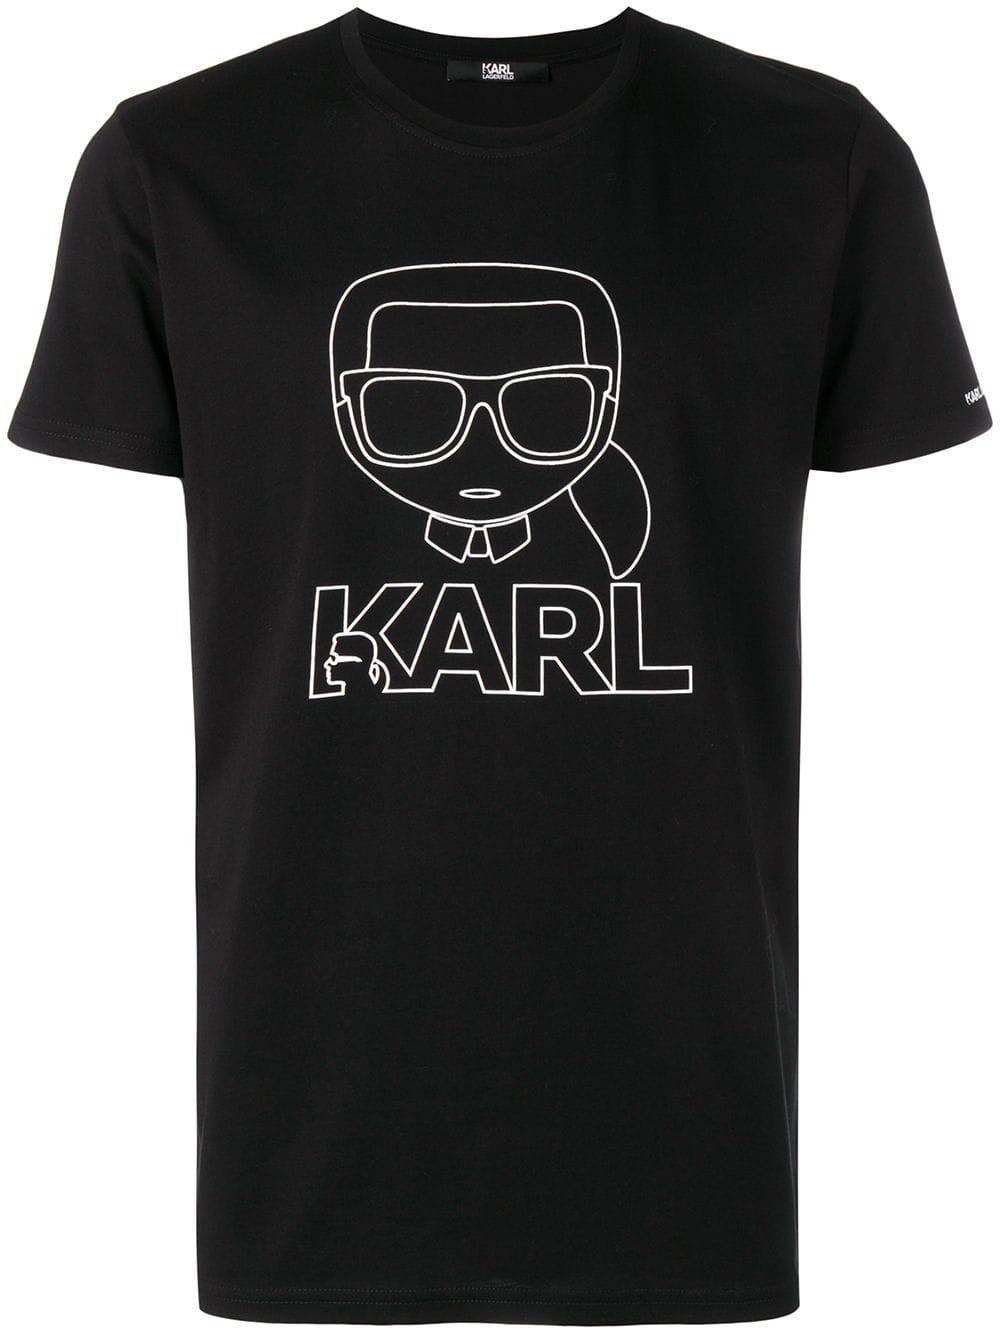 Karl Lagerfeld Cotton Ikonik Karl Outline T-shirt in Black for Men - Lyst